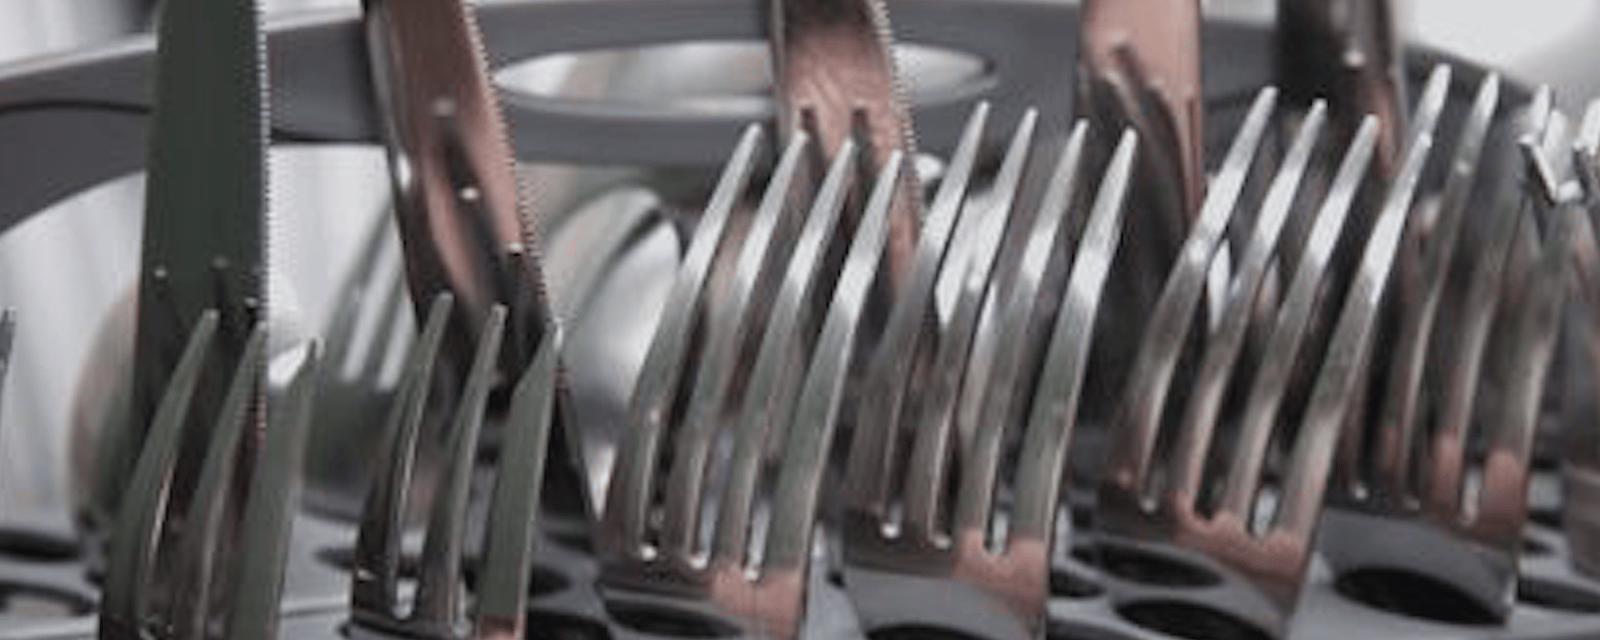 Quelle est la meilleure façon de placer les fourchettes et les couteaux dans le lave-vaisselle?